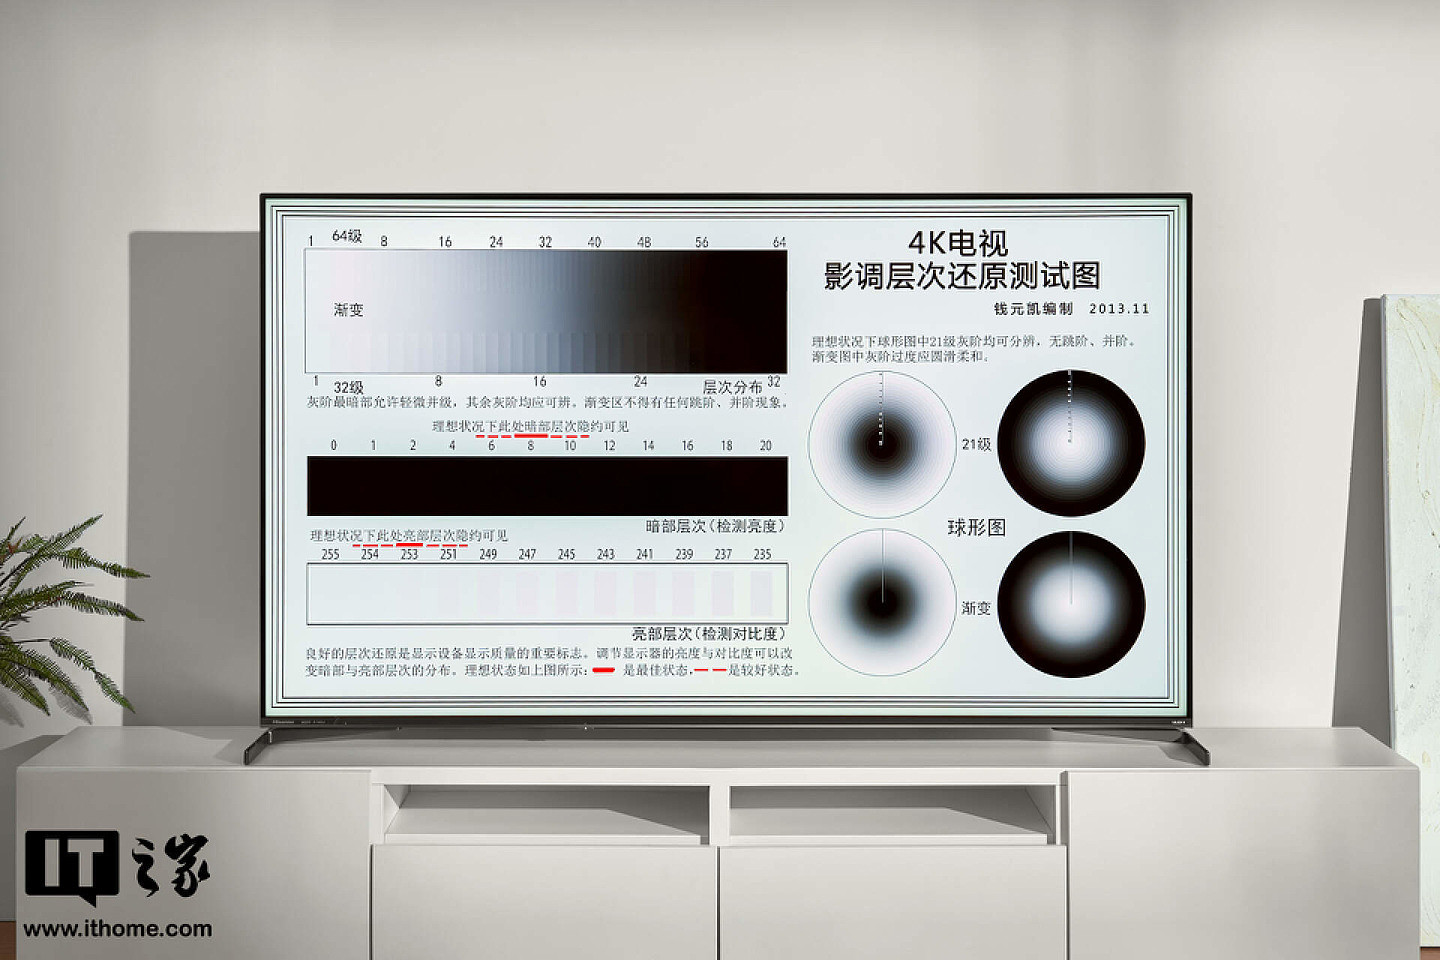 【IT之家评测室】ULED X 加持，千级分区 + 1800nit 亮度：海信电视 E8K 75 英寸体验 - 18